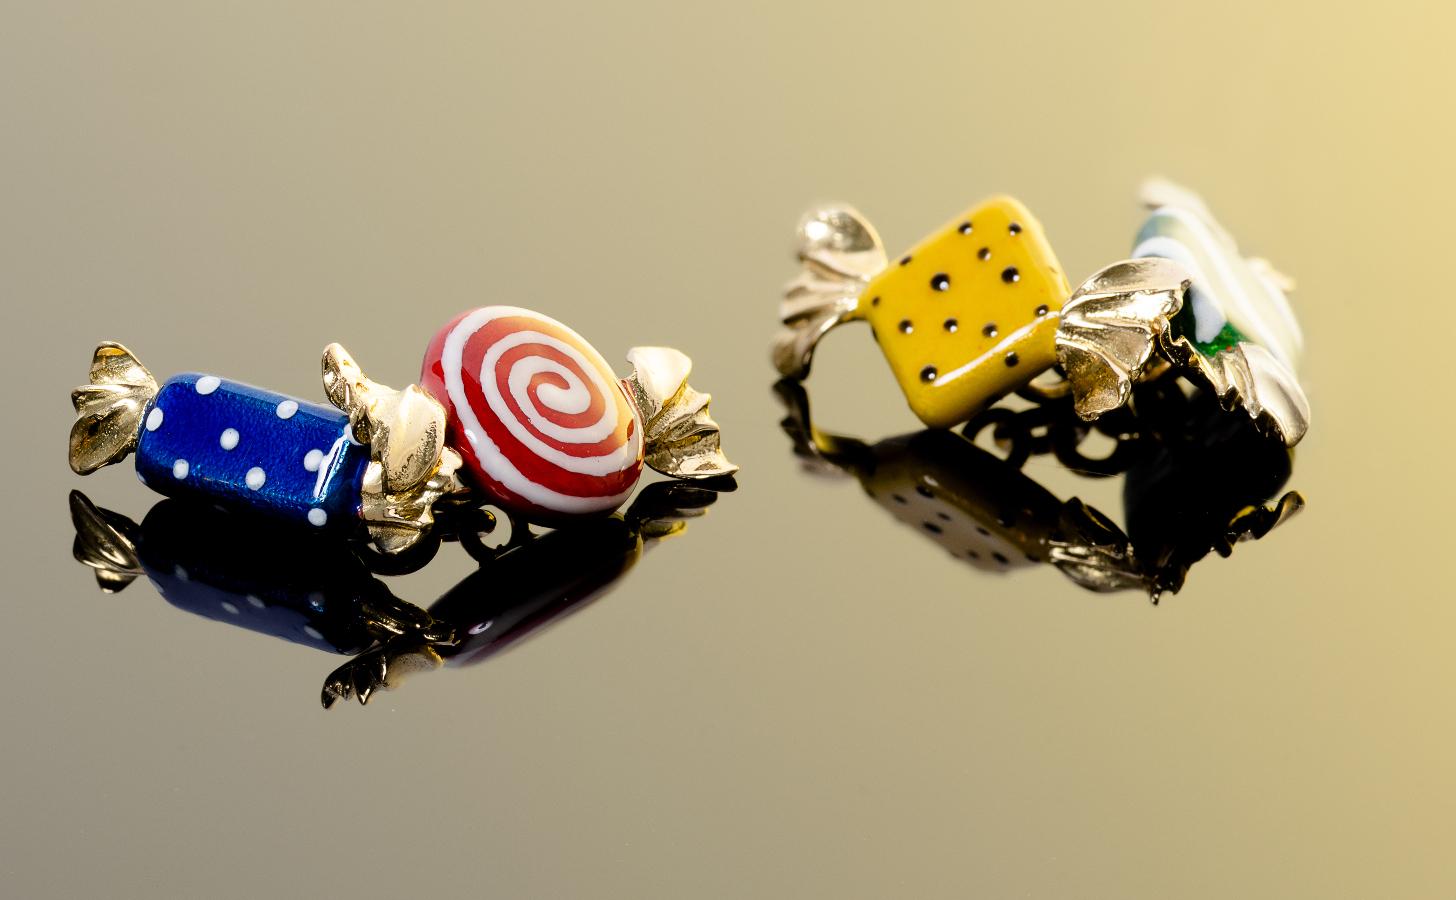  Paire de boutons de manchette en forme de bonbons emballés, appliqués d'émail translucide rouge, bleu, blanc et vert. 

Connexions en maillons de chaîne dorés.   

Monté en or jaune 18Kt